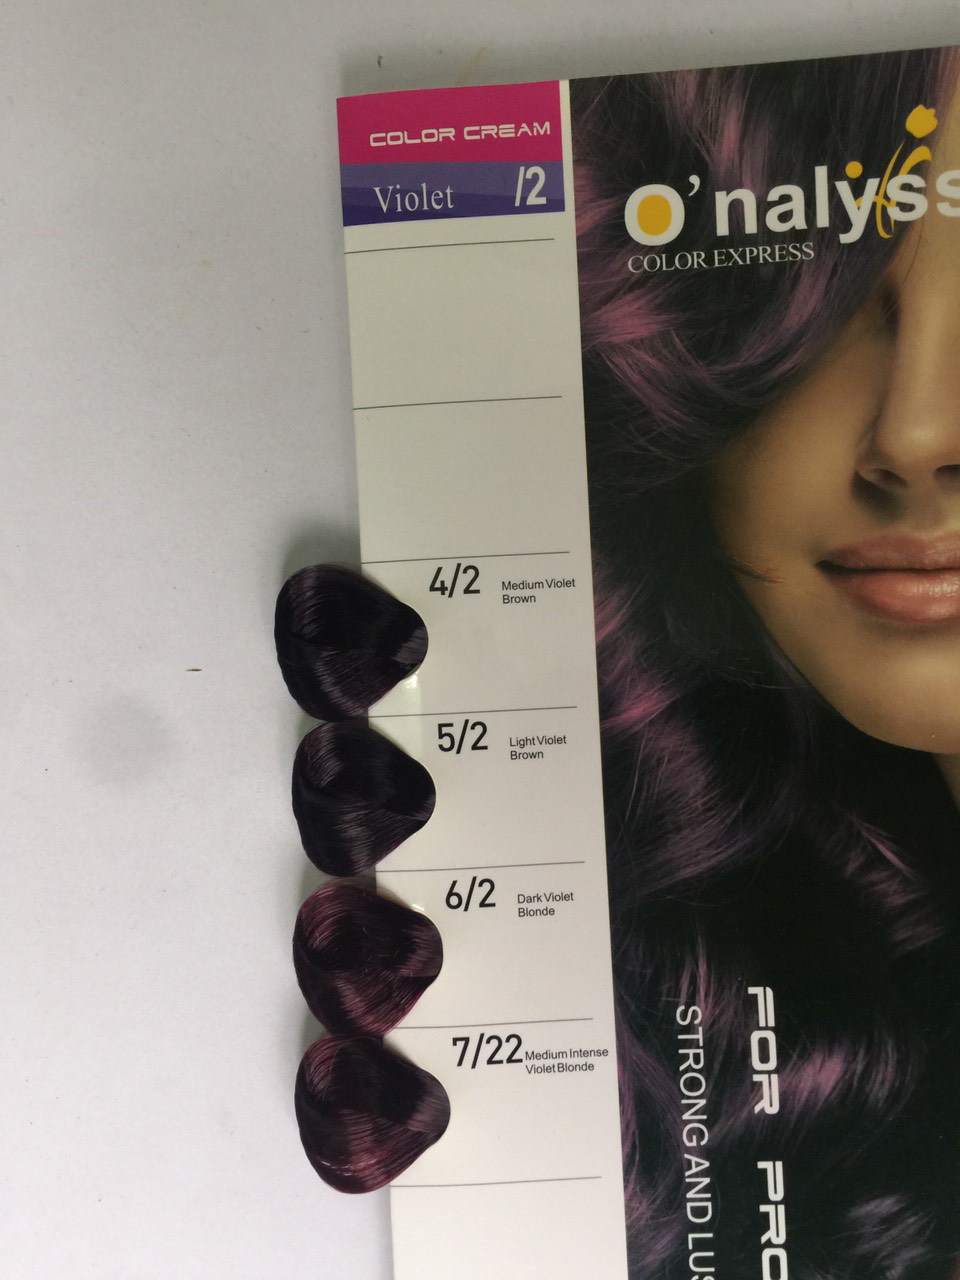 O\'nalyss Colour Expression: O\'nalyss Colour Expression là dòng sản phẩm nhuộm tóc độc đáo và sang trọng, giúp giữ màu sắc mới và tươi sáng cho tóc của bạn. Với thành phần từ thiên nhiên và công thức độc đáo, sản phẩm này sẽ làm cho tóc bạn trở nên suôn mượt và khỏe mạnh hơn bao giờ hết. Hãy thử ngay O\'nalyss Colour Expression để cảm nhận sự khác biệt ngay lập tức!